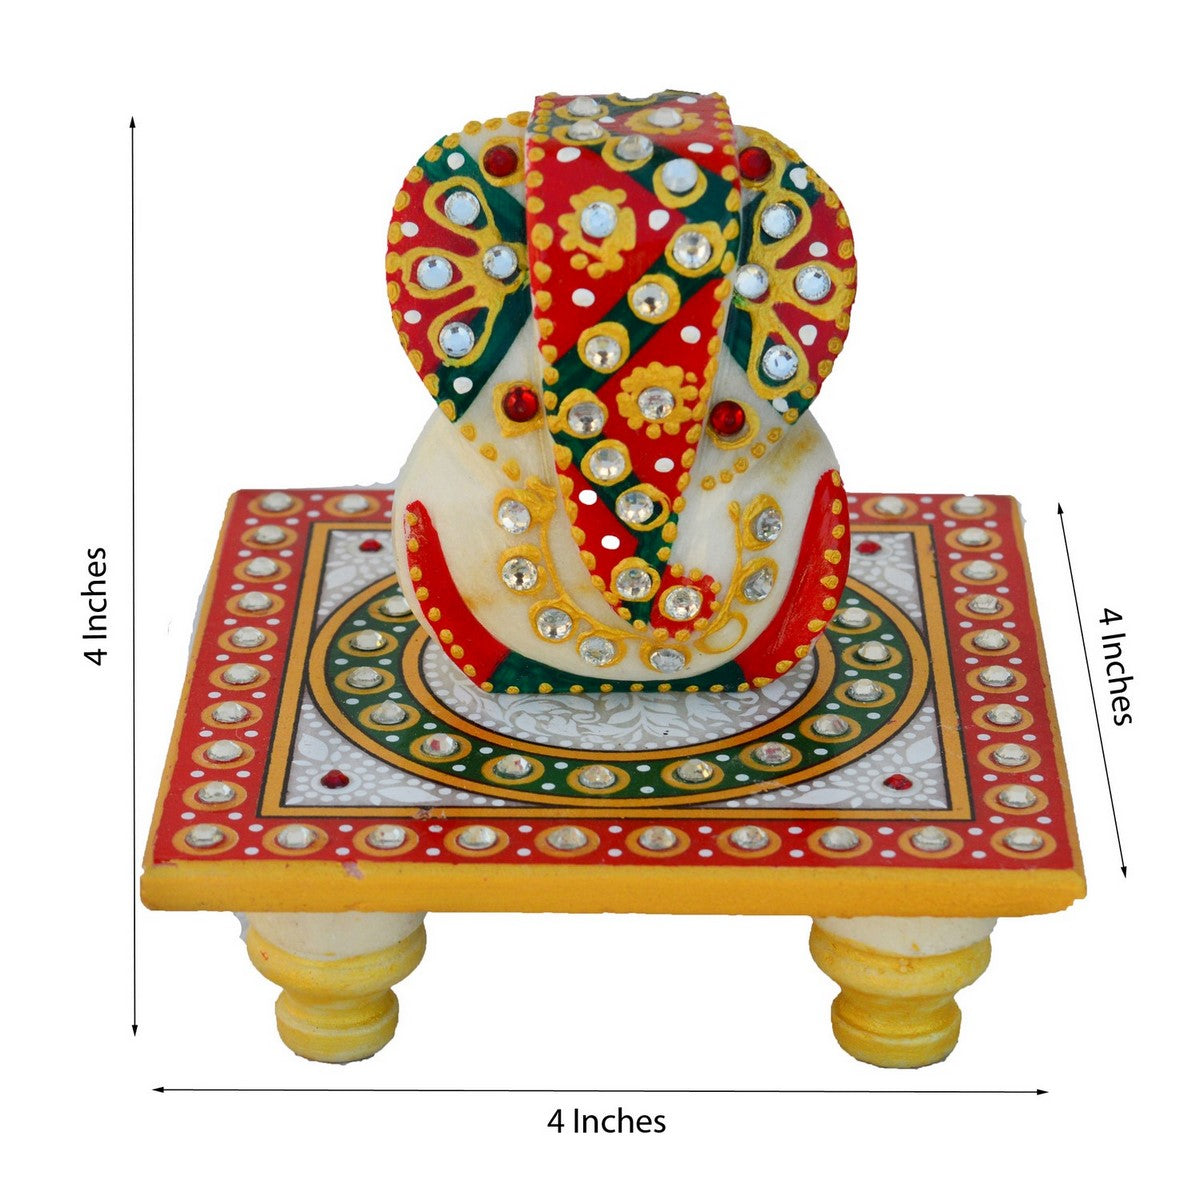 Designer Ganesha Mor Pankh Rakhi with Lord Ganesha on Kundan Studded Marble Chowki and Roli Tikka Matki, Best Wishes Greeting Card 1